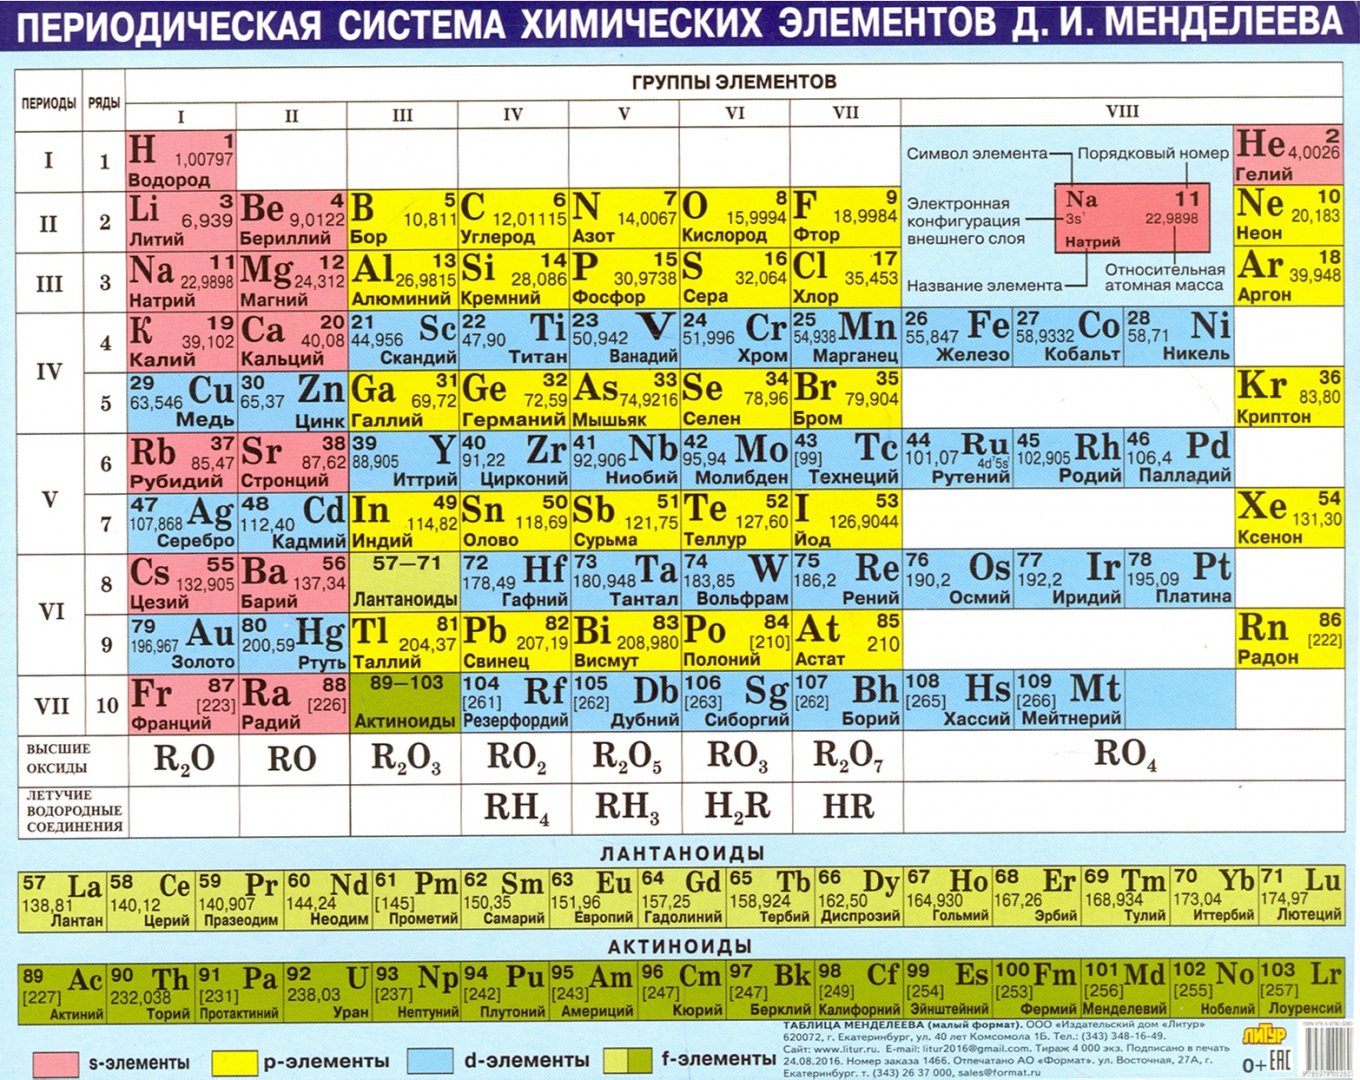 Первая группа менделеева. Химическая таблица Менделеева. Периодич табл Менделеева. Периодическая таблица Менделеева маленькая. Таблица Менделеева большая.